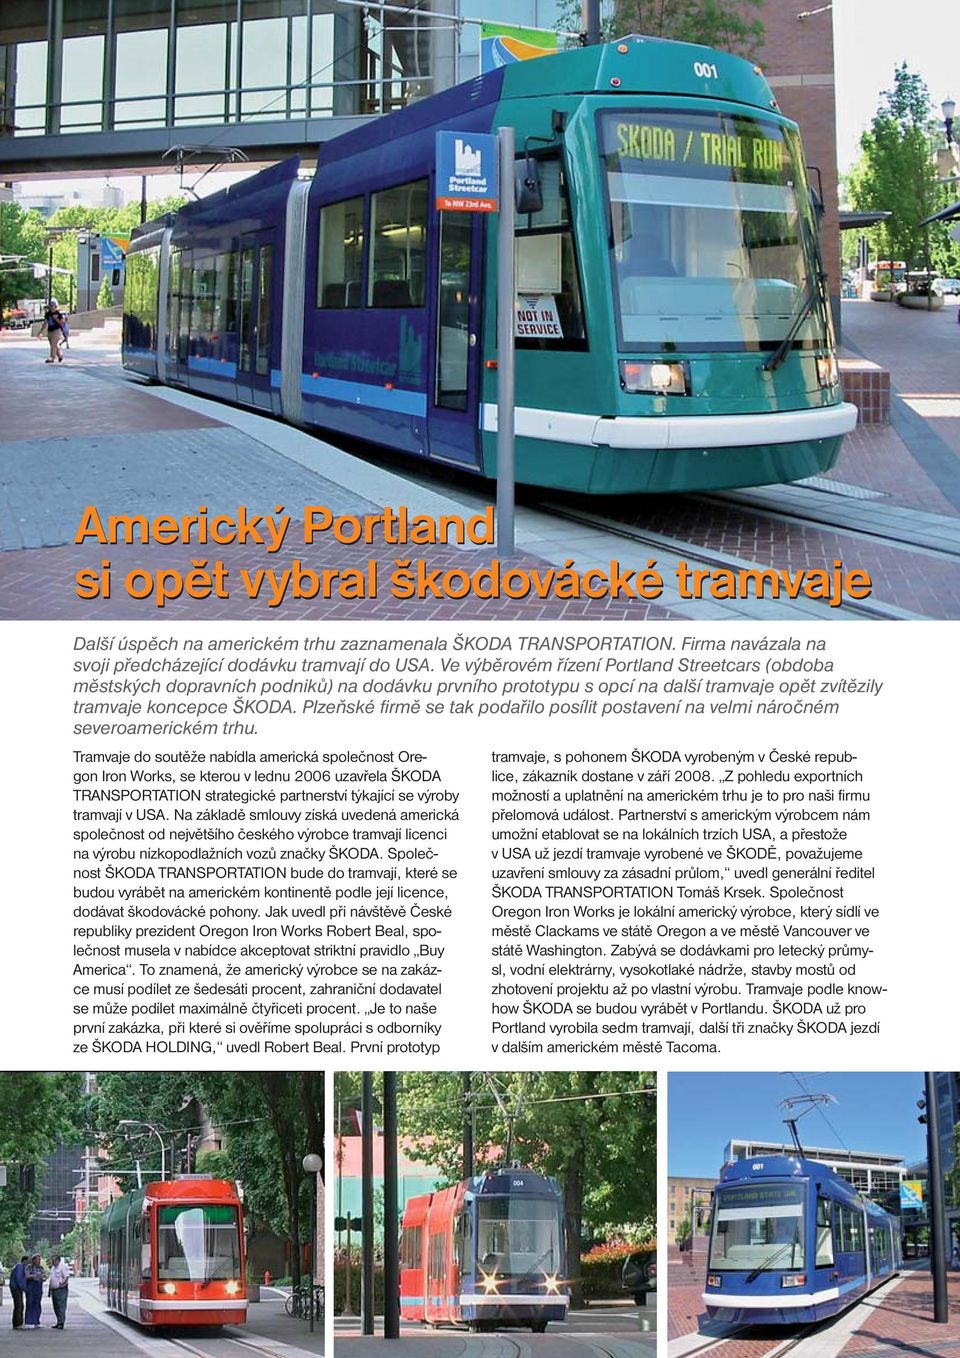 Ve výběrovém řízení Portland Streetcars (obdoba městských dopravních podniků) na dodávku prvního prototypu s opcí na další tramvaje opět zvítězily tramvaje koncepce ŠKODA.